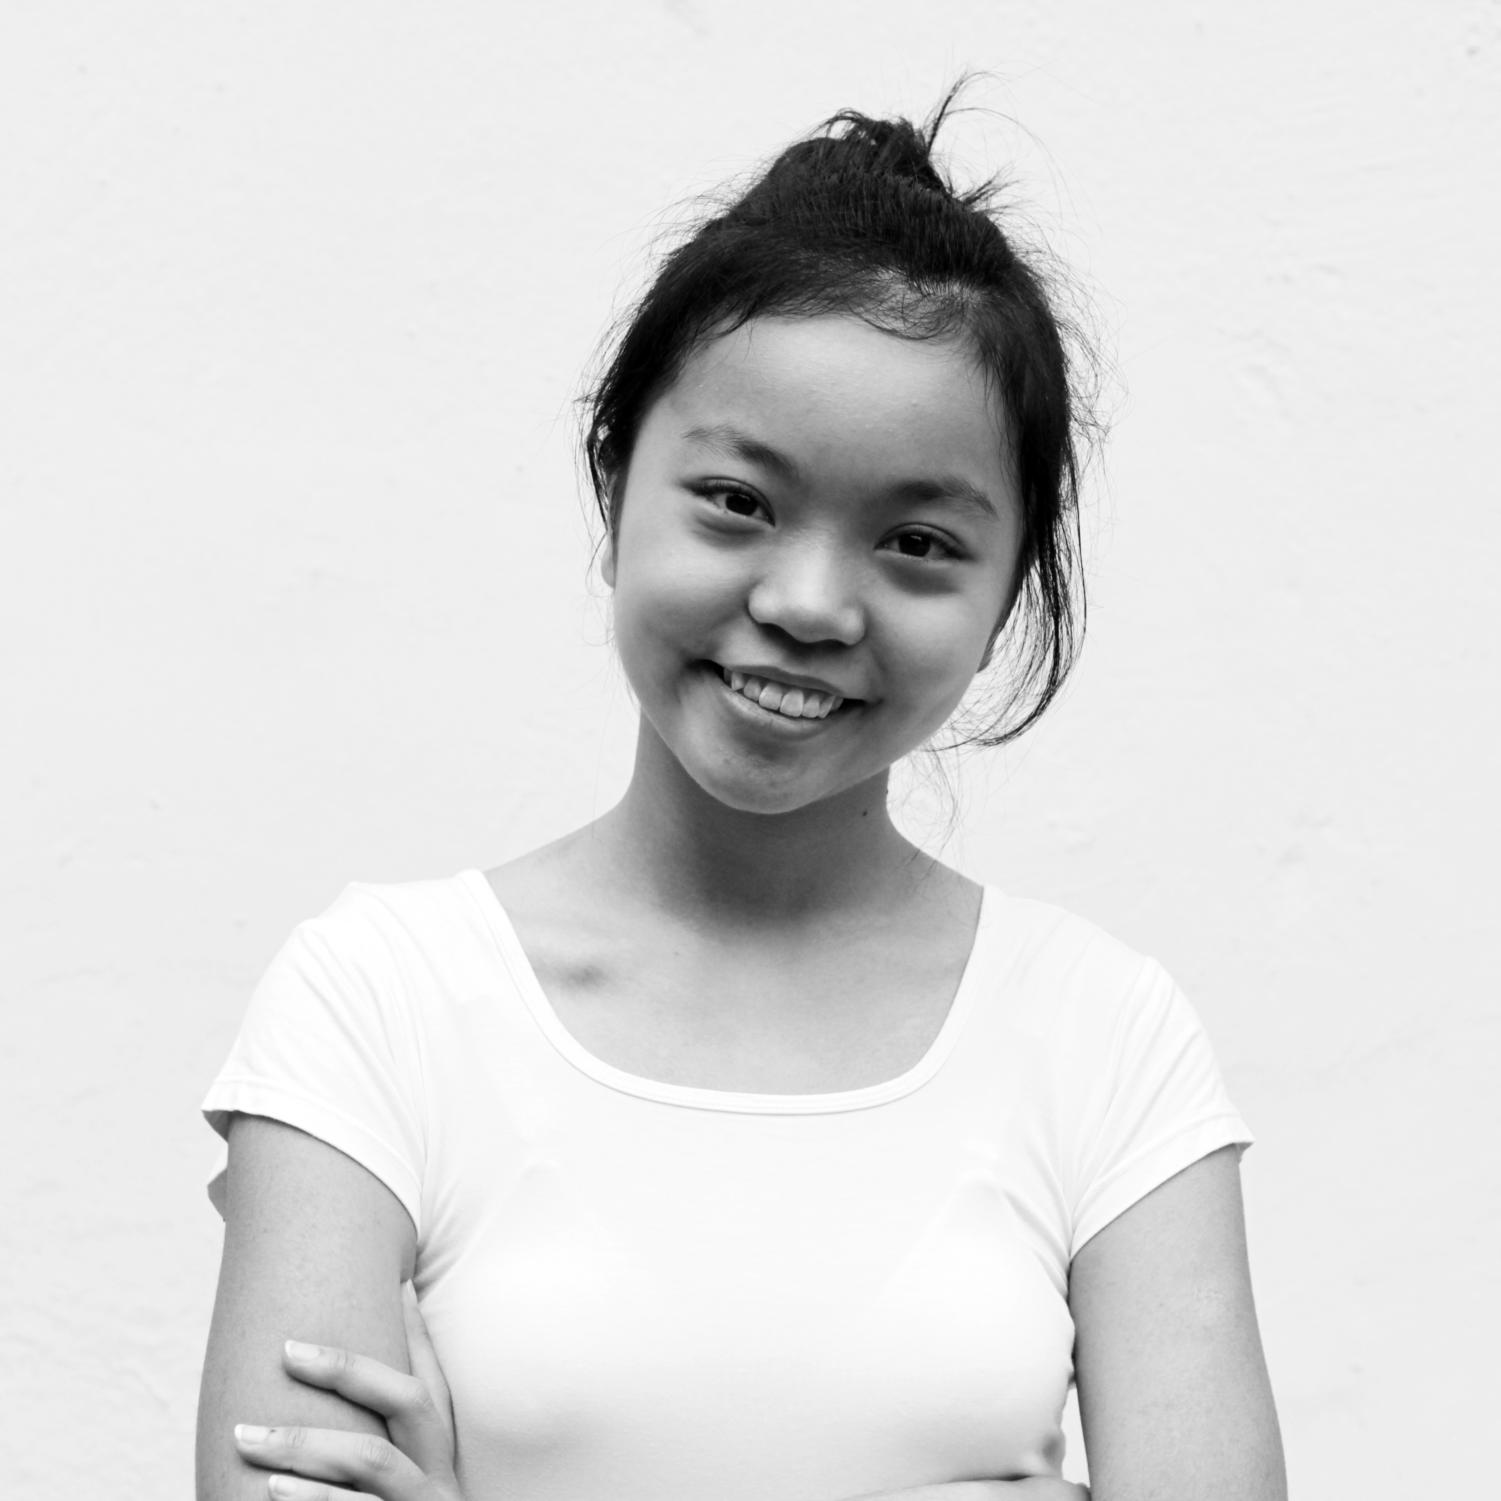 Rosemarie Ho, 2014, taken by Brian HK Chan